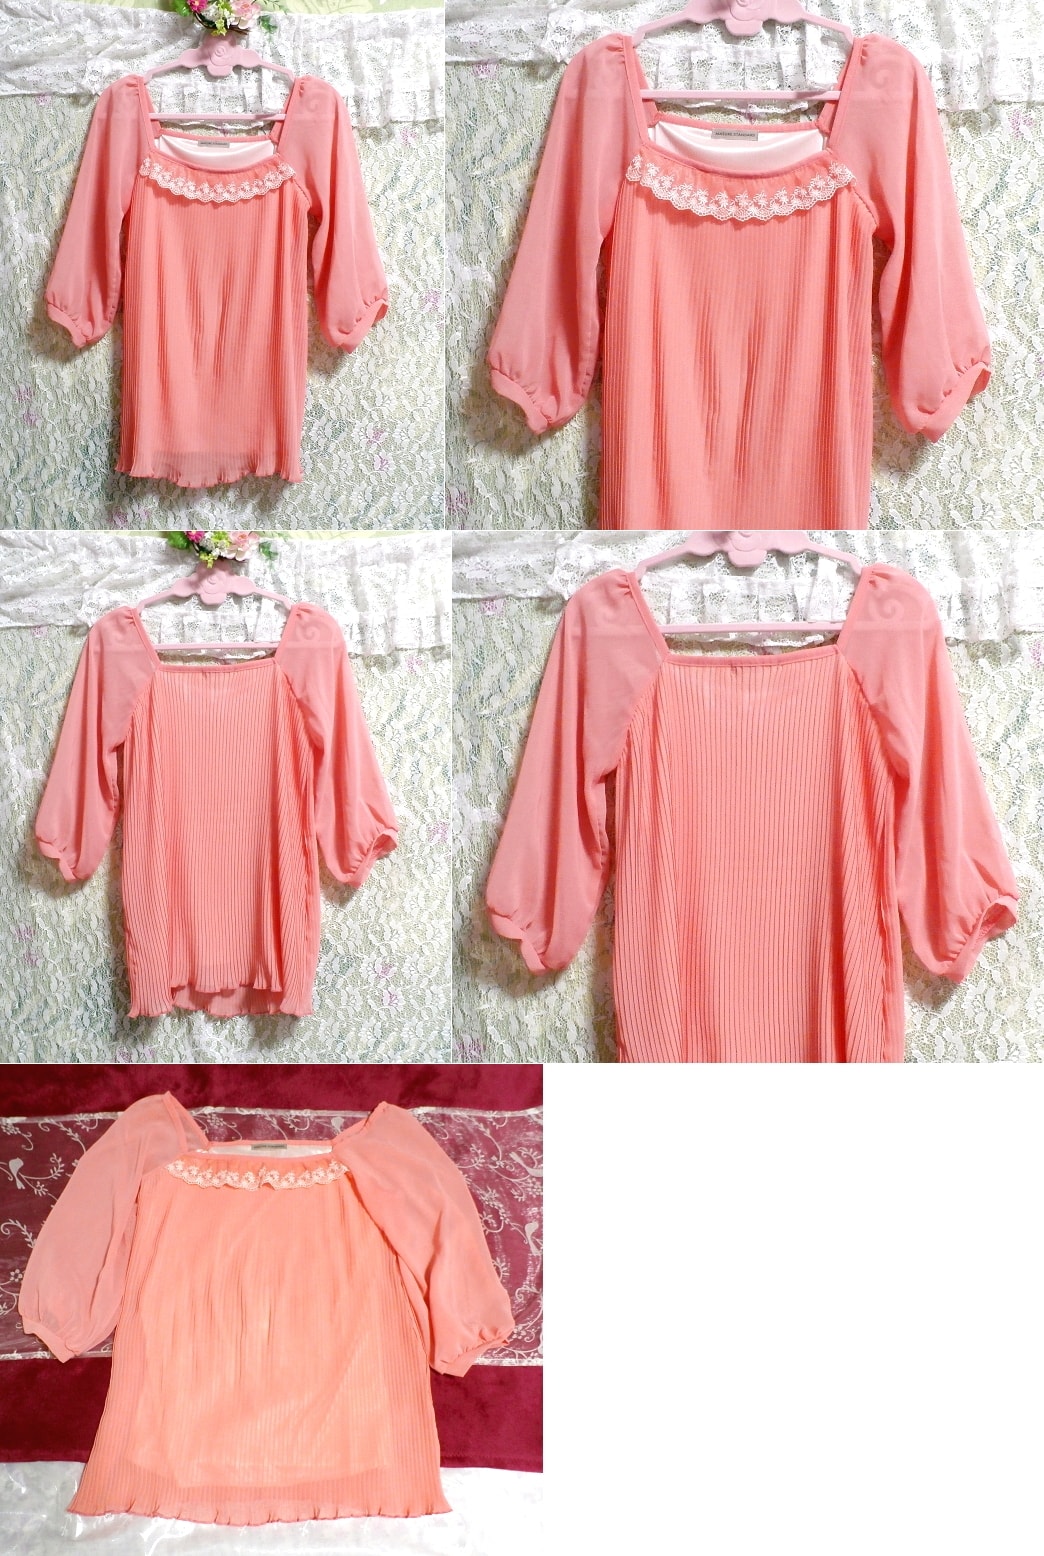 Fluorescent pink chiffon tunic top, tunic, short sleeve, m size